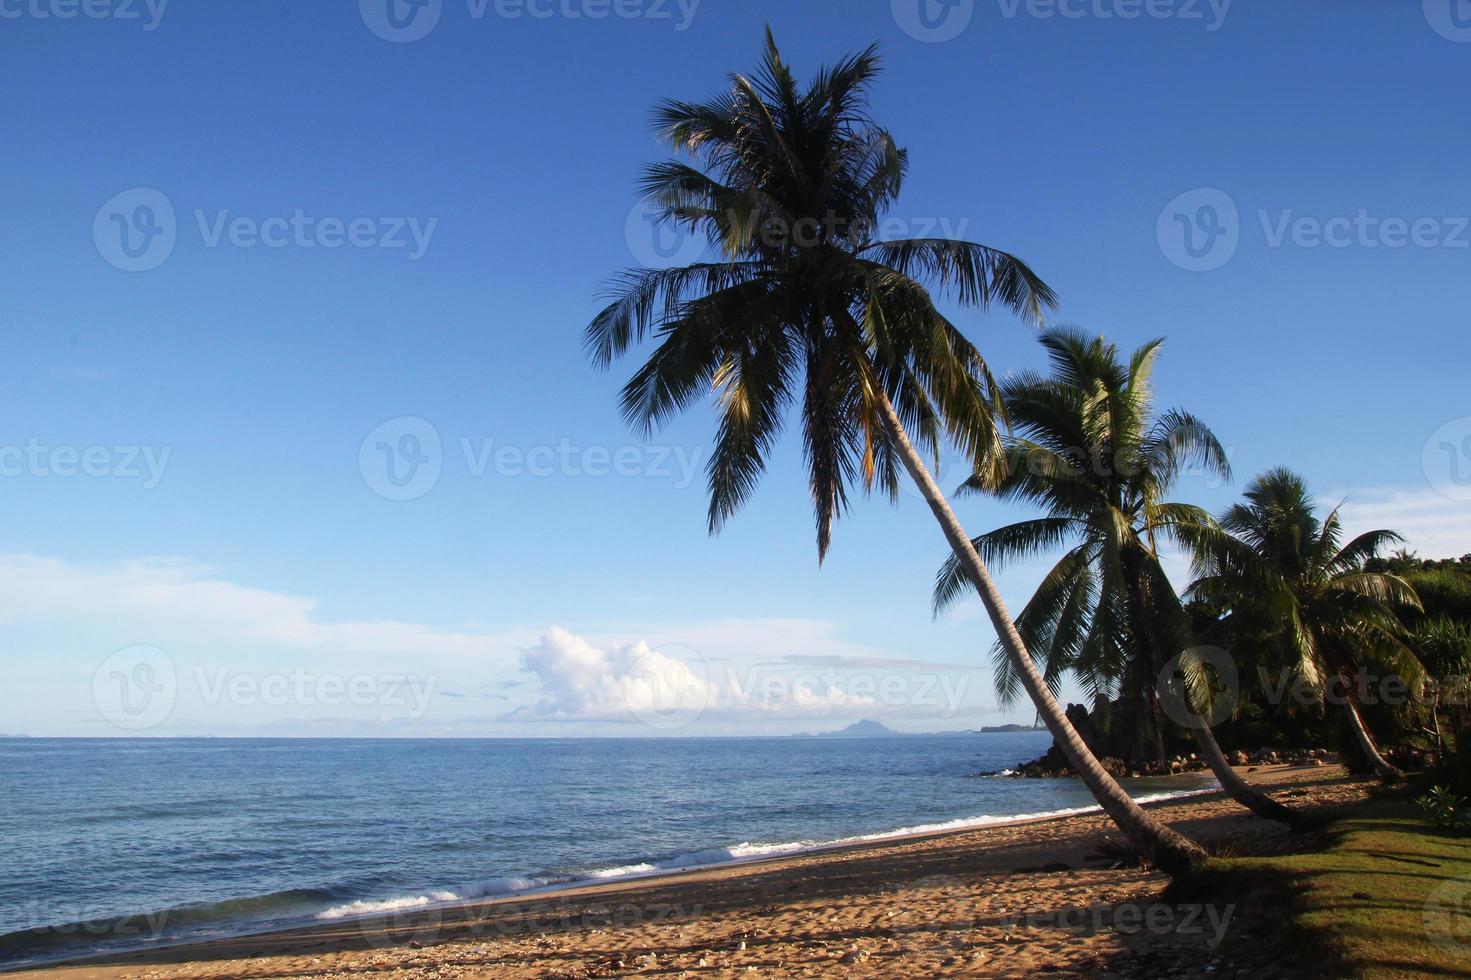 voyage sur l'île de koh lanta, en thaïlande. la vue sur la plage de sable avec palmiers et mer bleue. photo